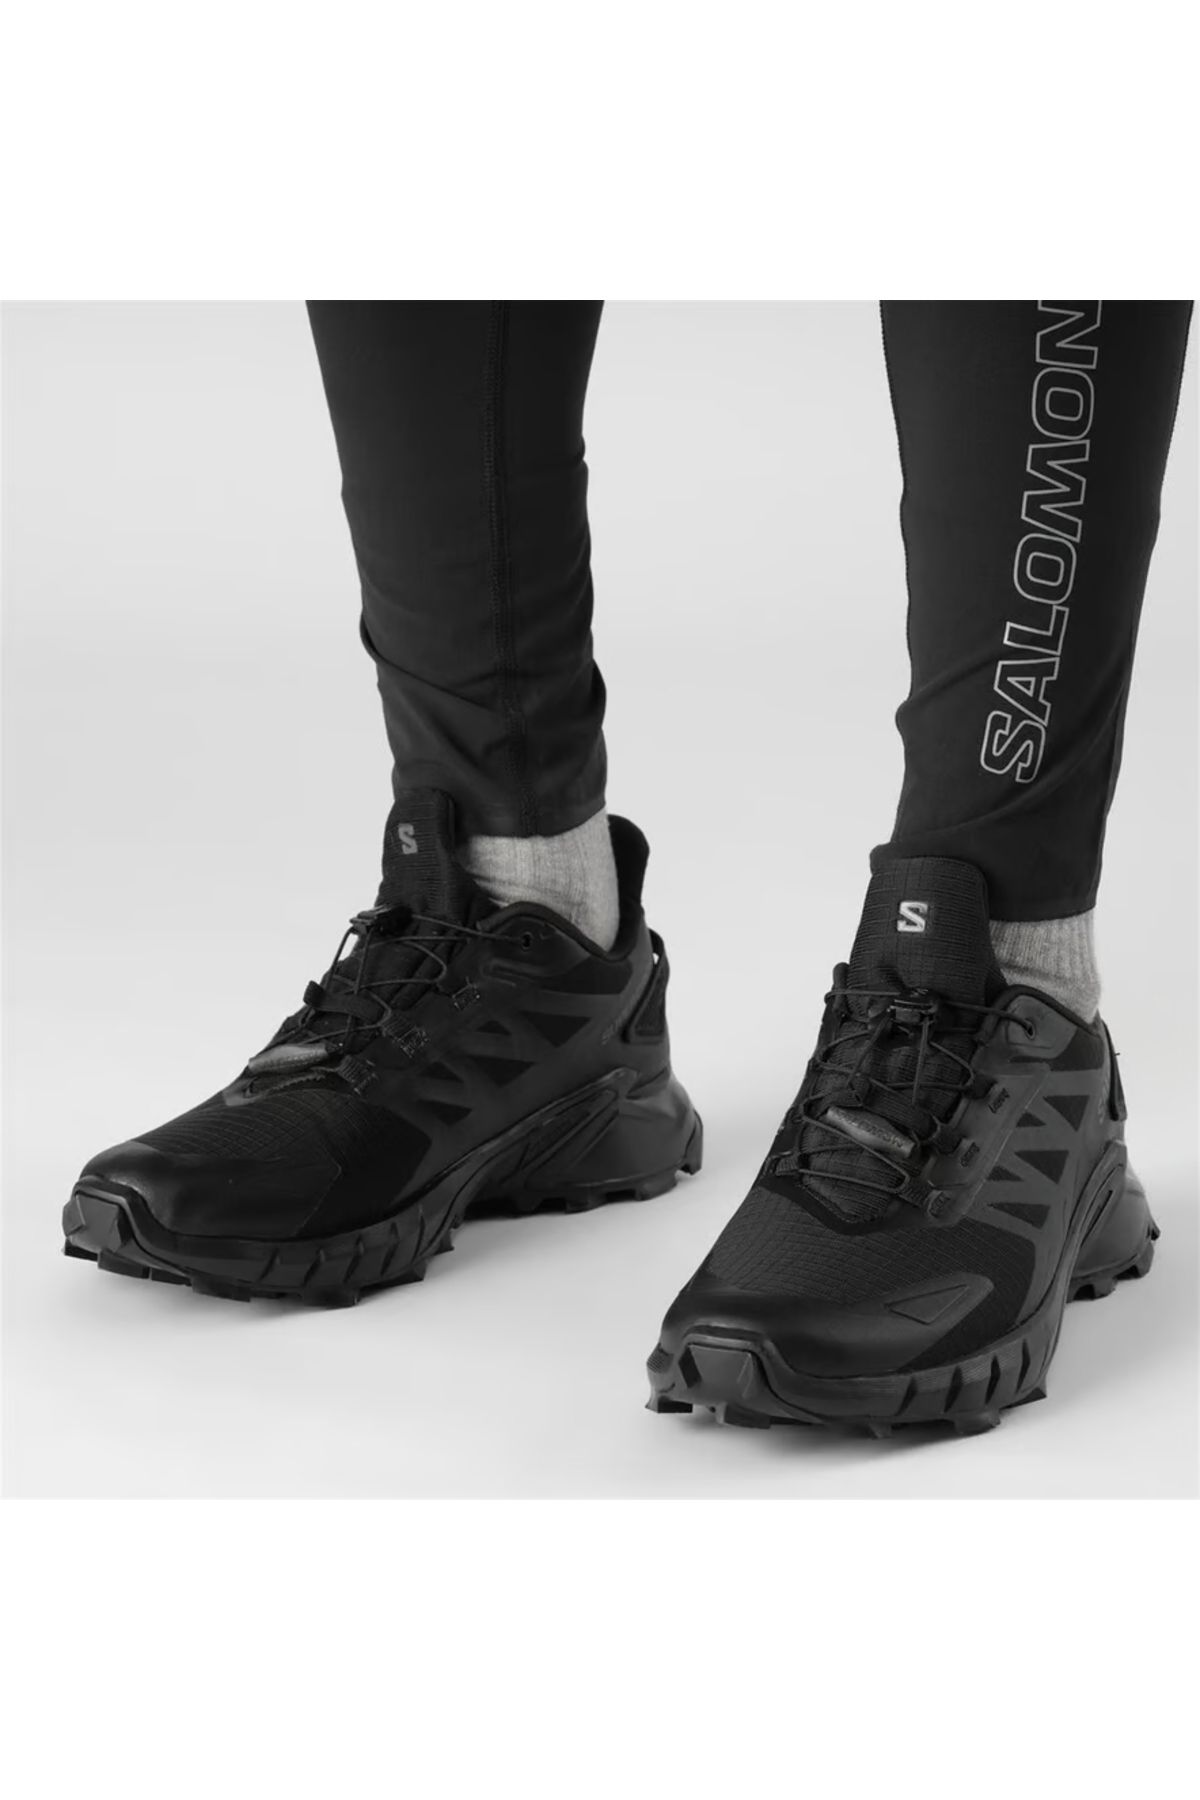 Salomon Goretex Waterproof and Cold Resistant Men's Winter Outdoor Shoes